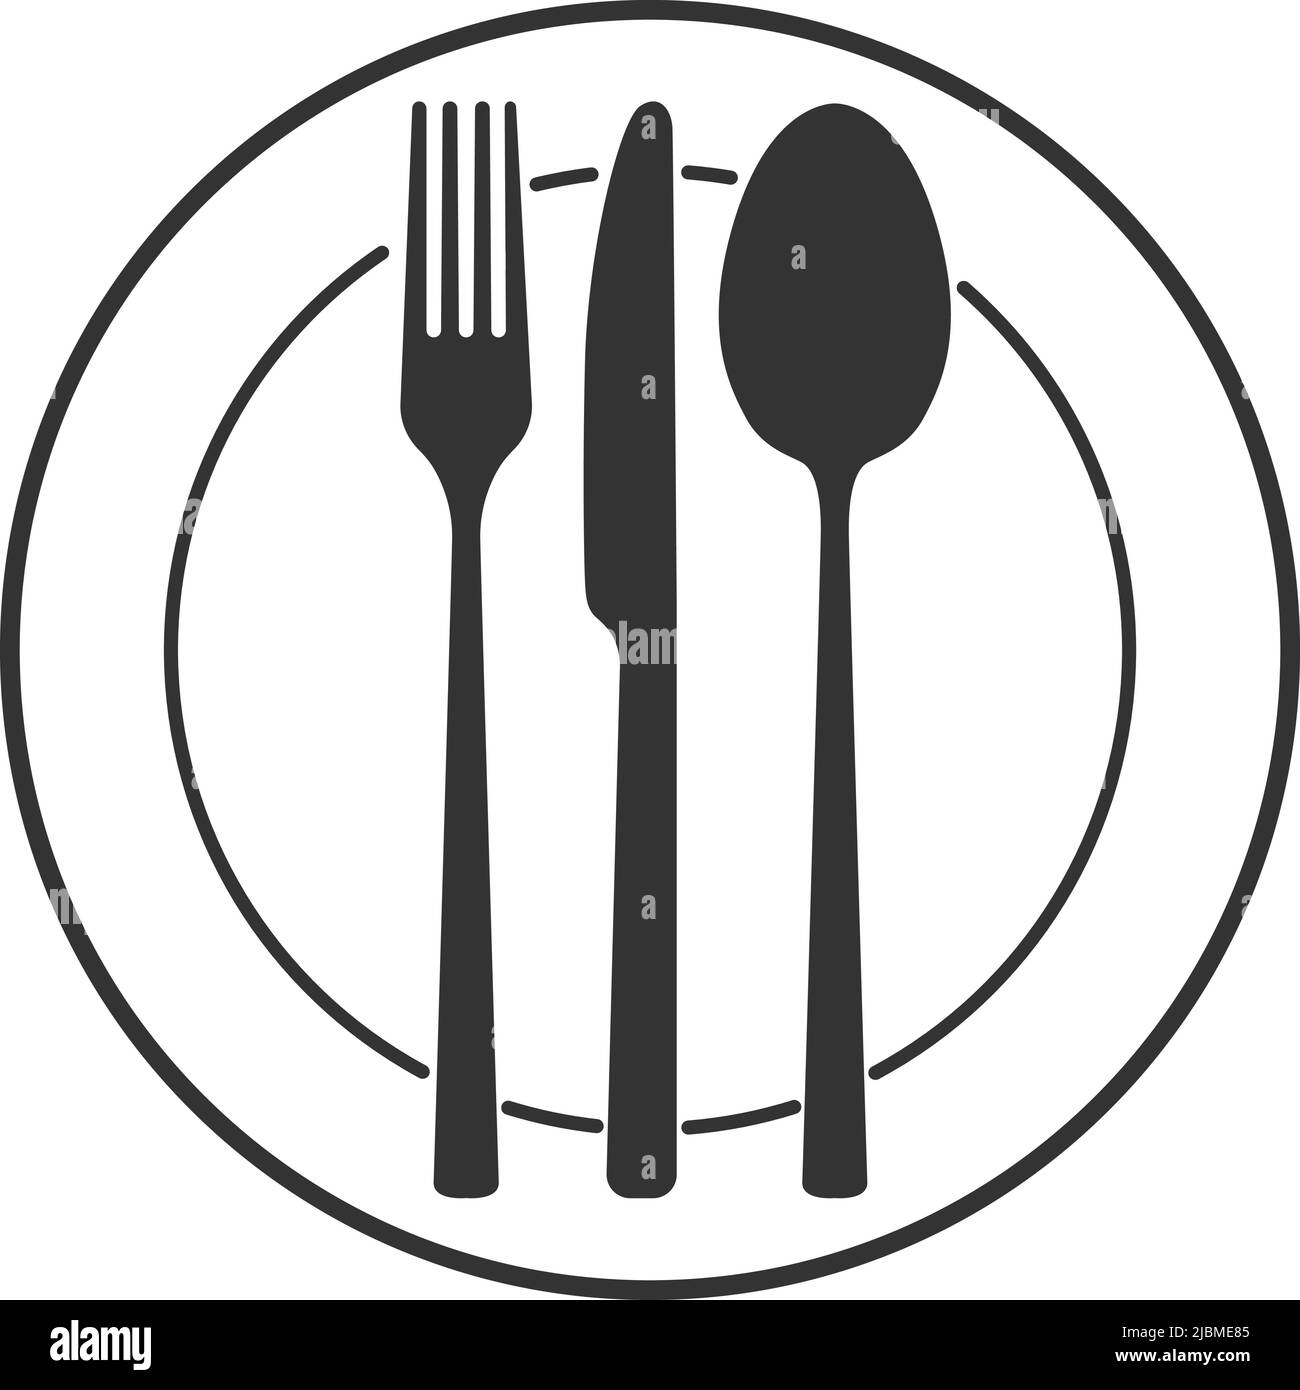 Menüsymbol, Set mit Teller, Messer, Gabel und Löffel isoliert auf weißem Hintergrund, Vektorgrafik Stock Vektor